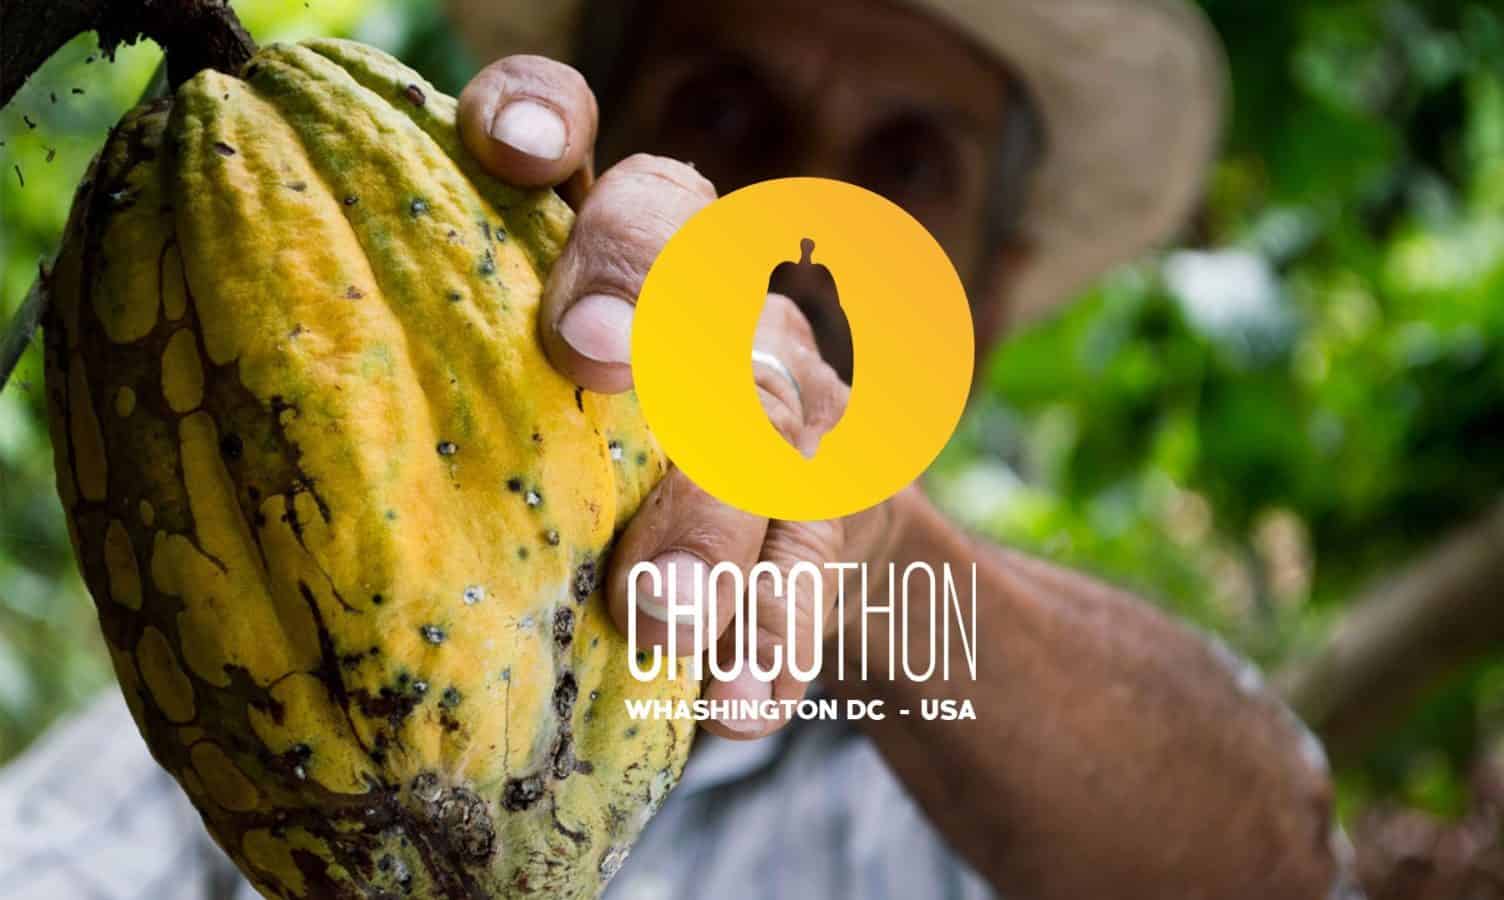 Chocothon是一项可持续创新计划，旨在增强和联系可可农民，为他们以及可可生产中其他价值连锁利益相关者创造新的机会。